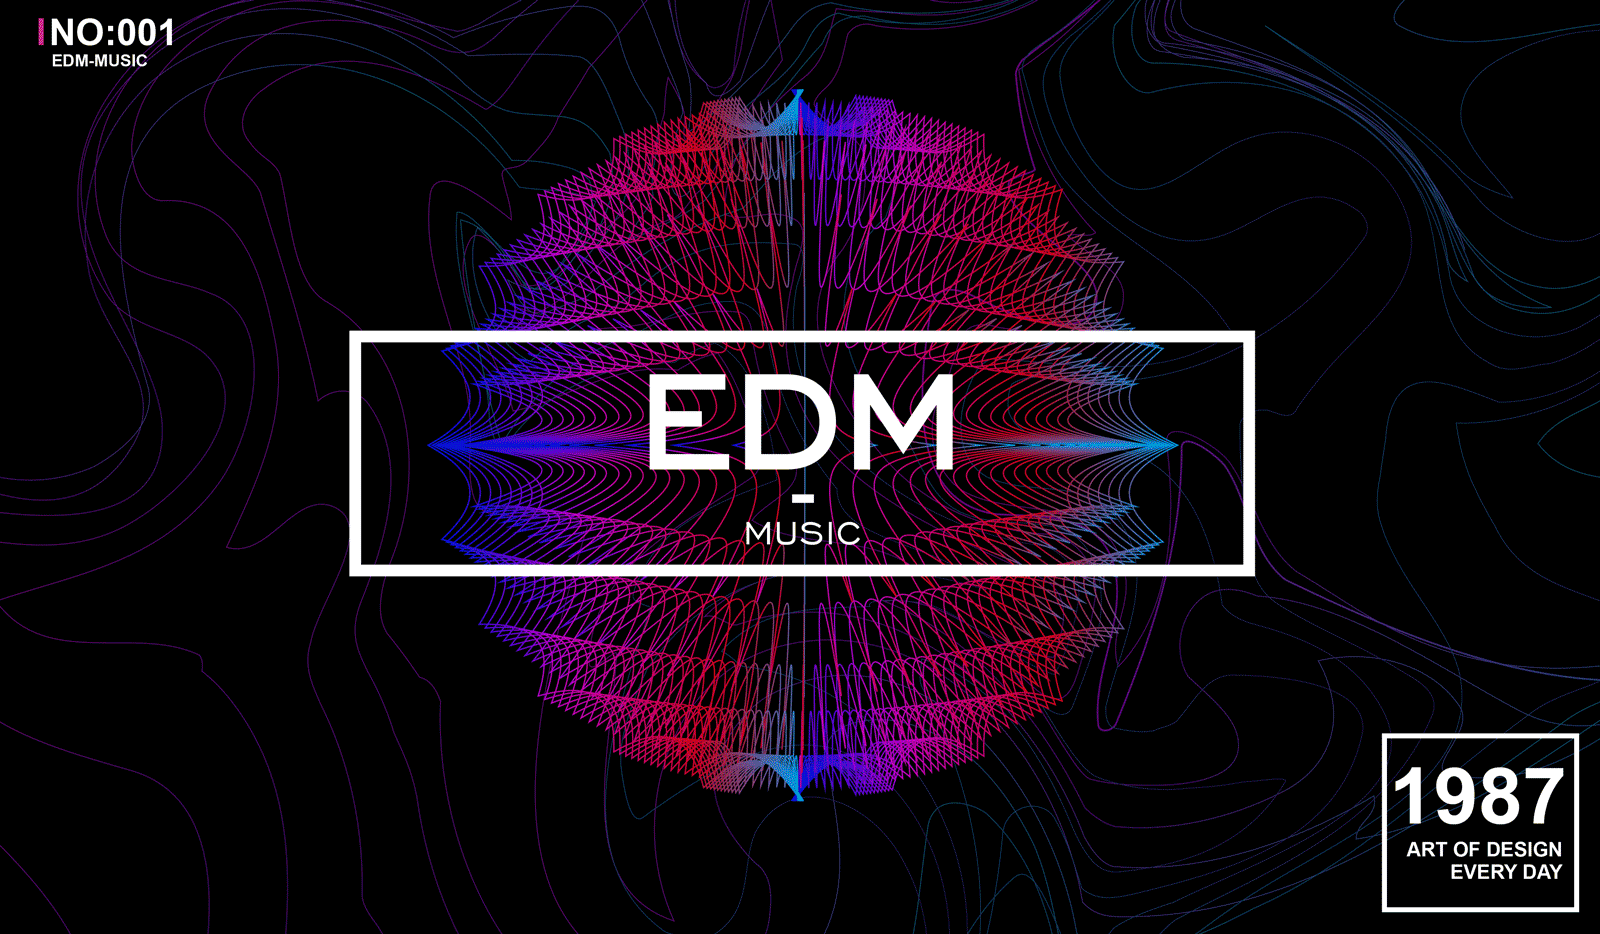 EDM обложка. Картинки EDM. Музыкальные логотипы EDM. EDM фон. Edm house music